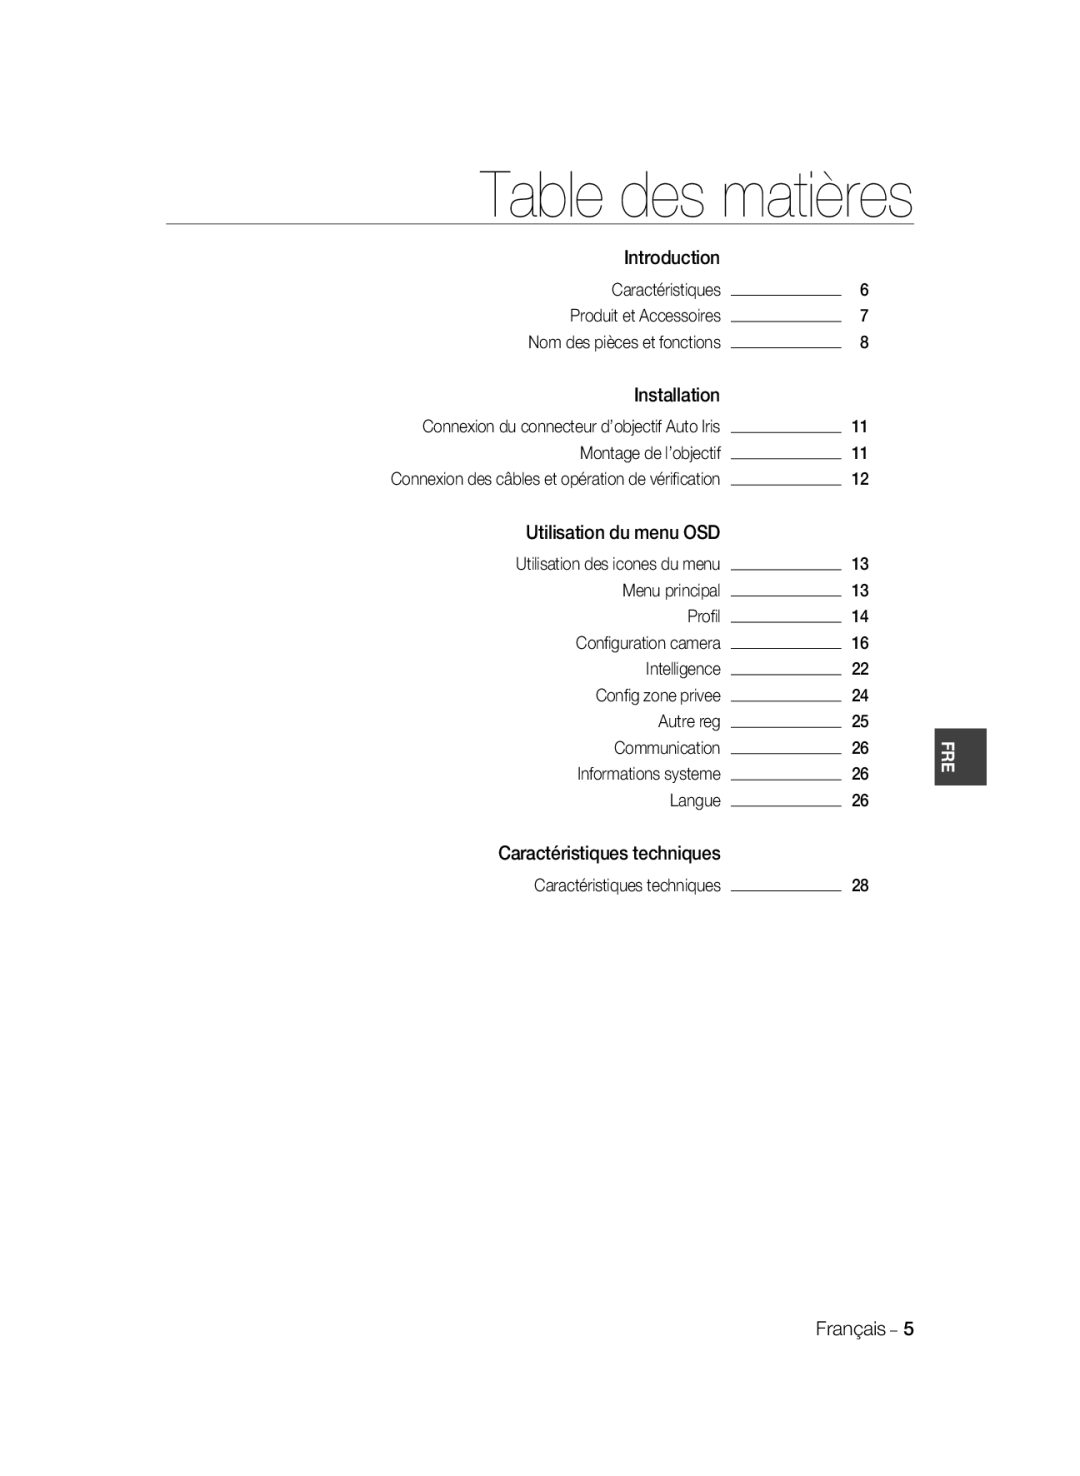 Samsung SCC-B2037P manual Table des matières, Introduction, Caractéristiques, Installation, Utilisation du menu OSD, Proﬁl 